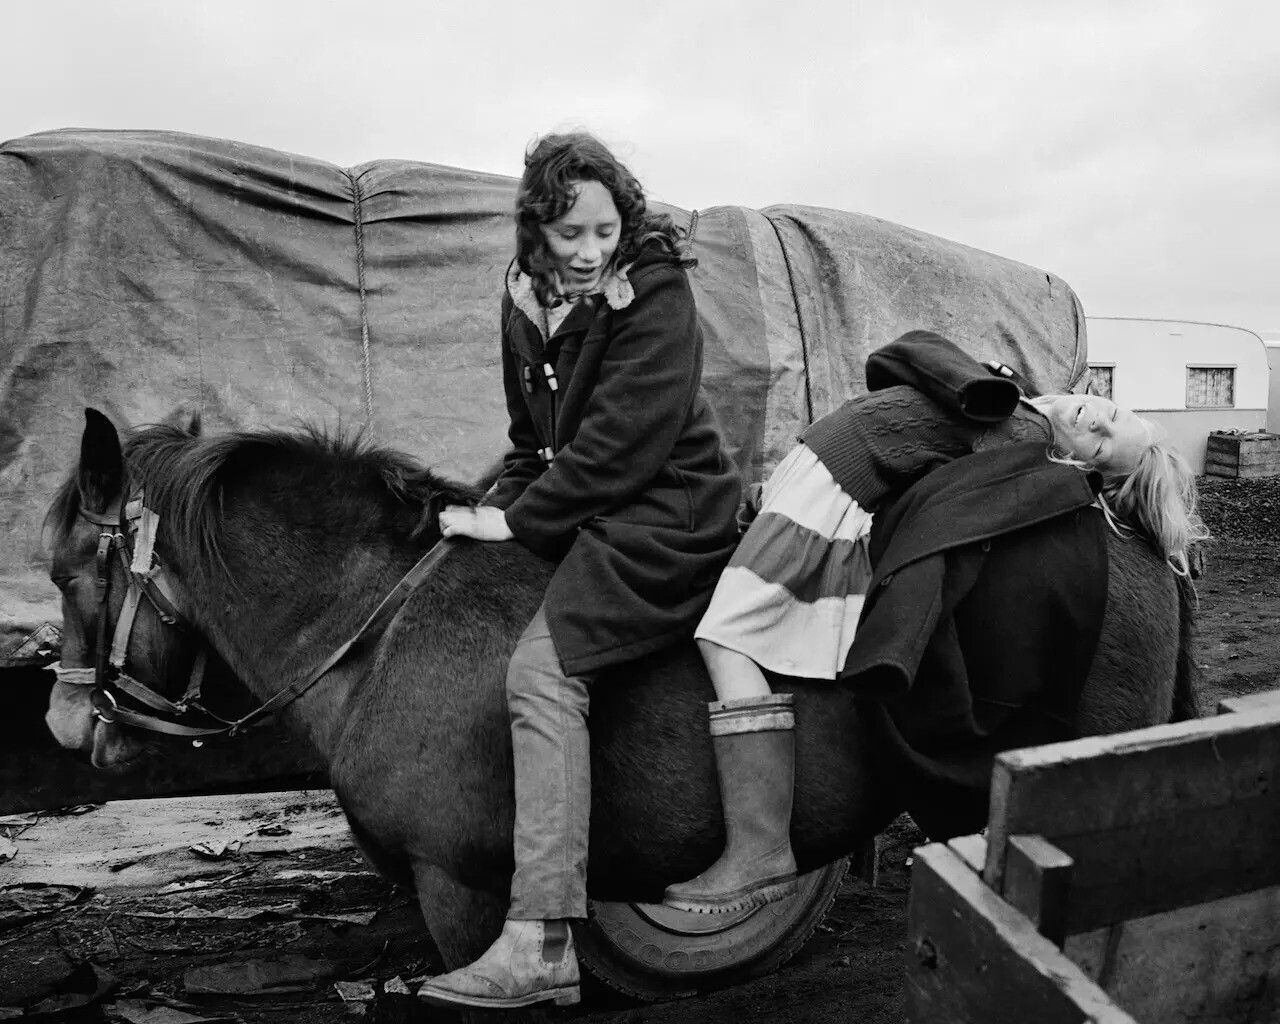 Элис и Хелен, морской лагерь Линмут, Нортумберленд, Великобритания,1982 год. Фотограф Крис Киллип